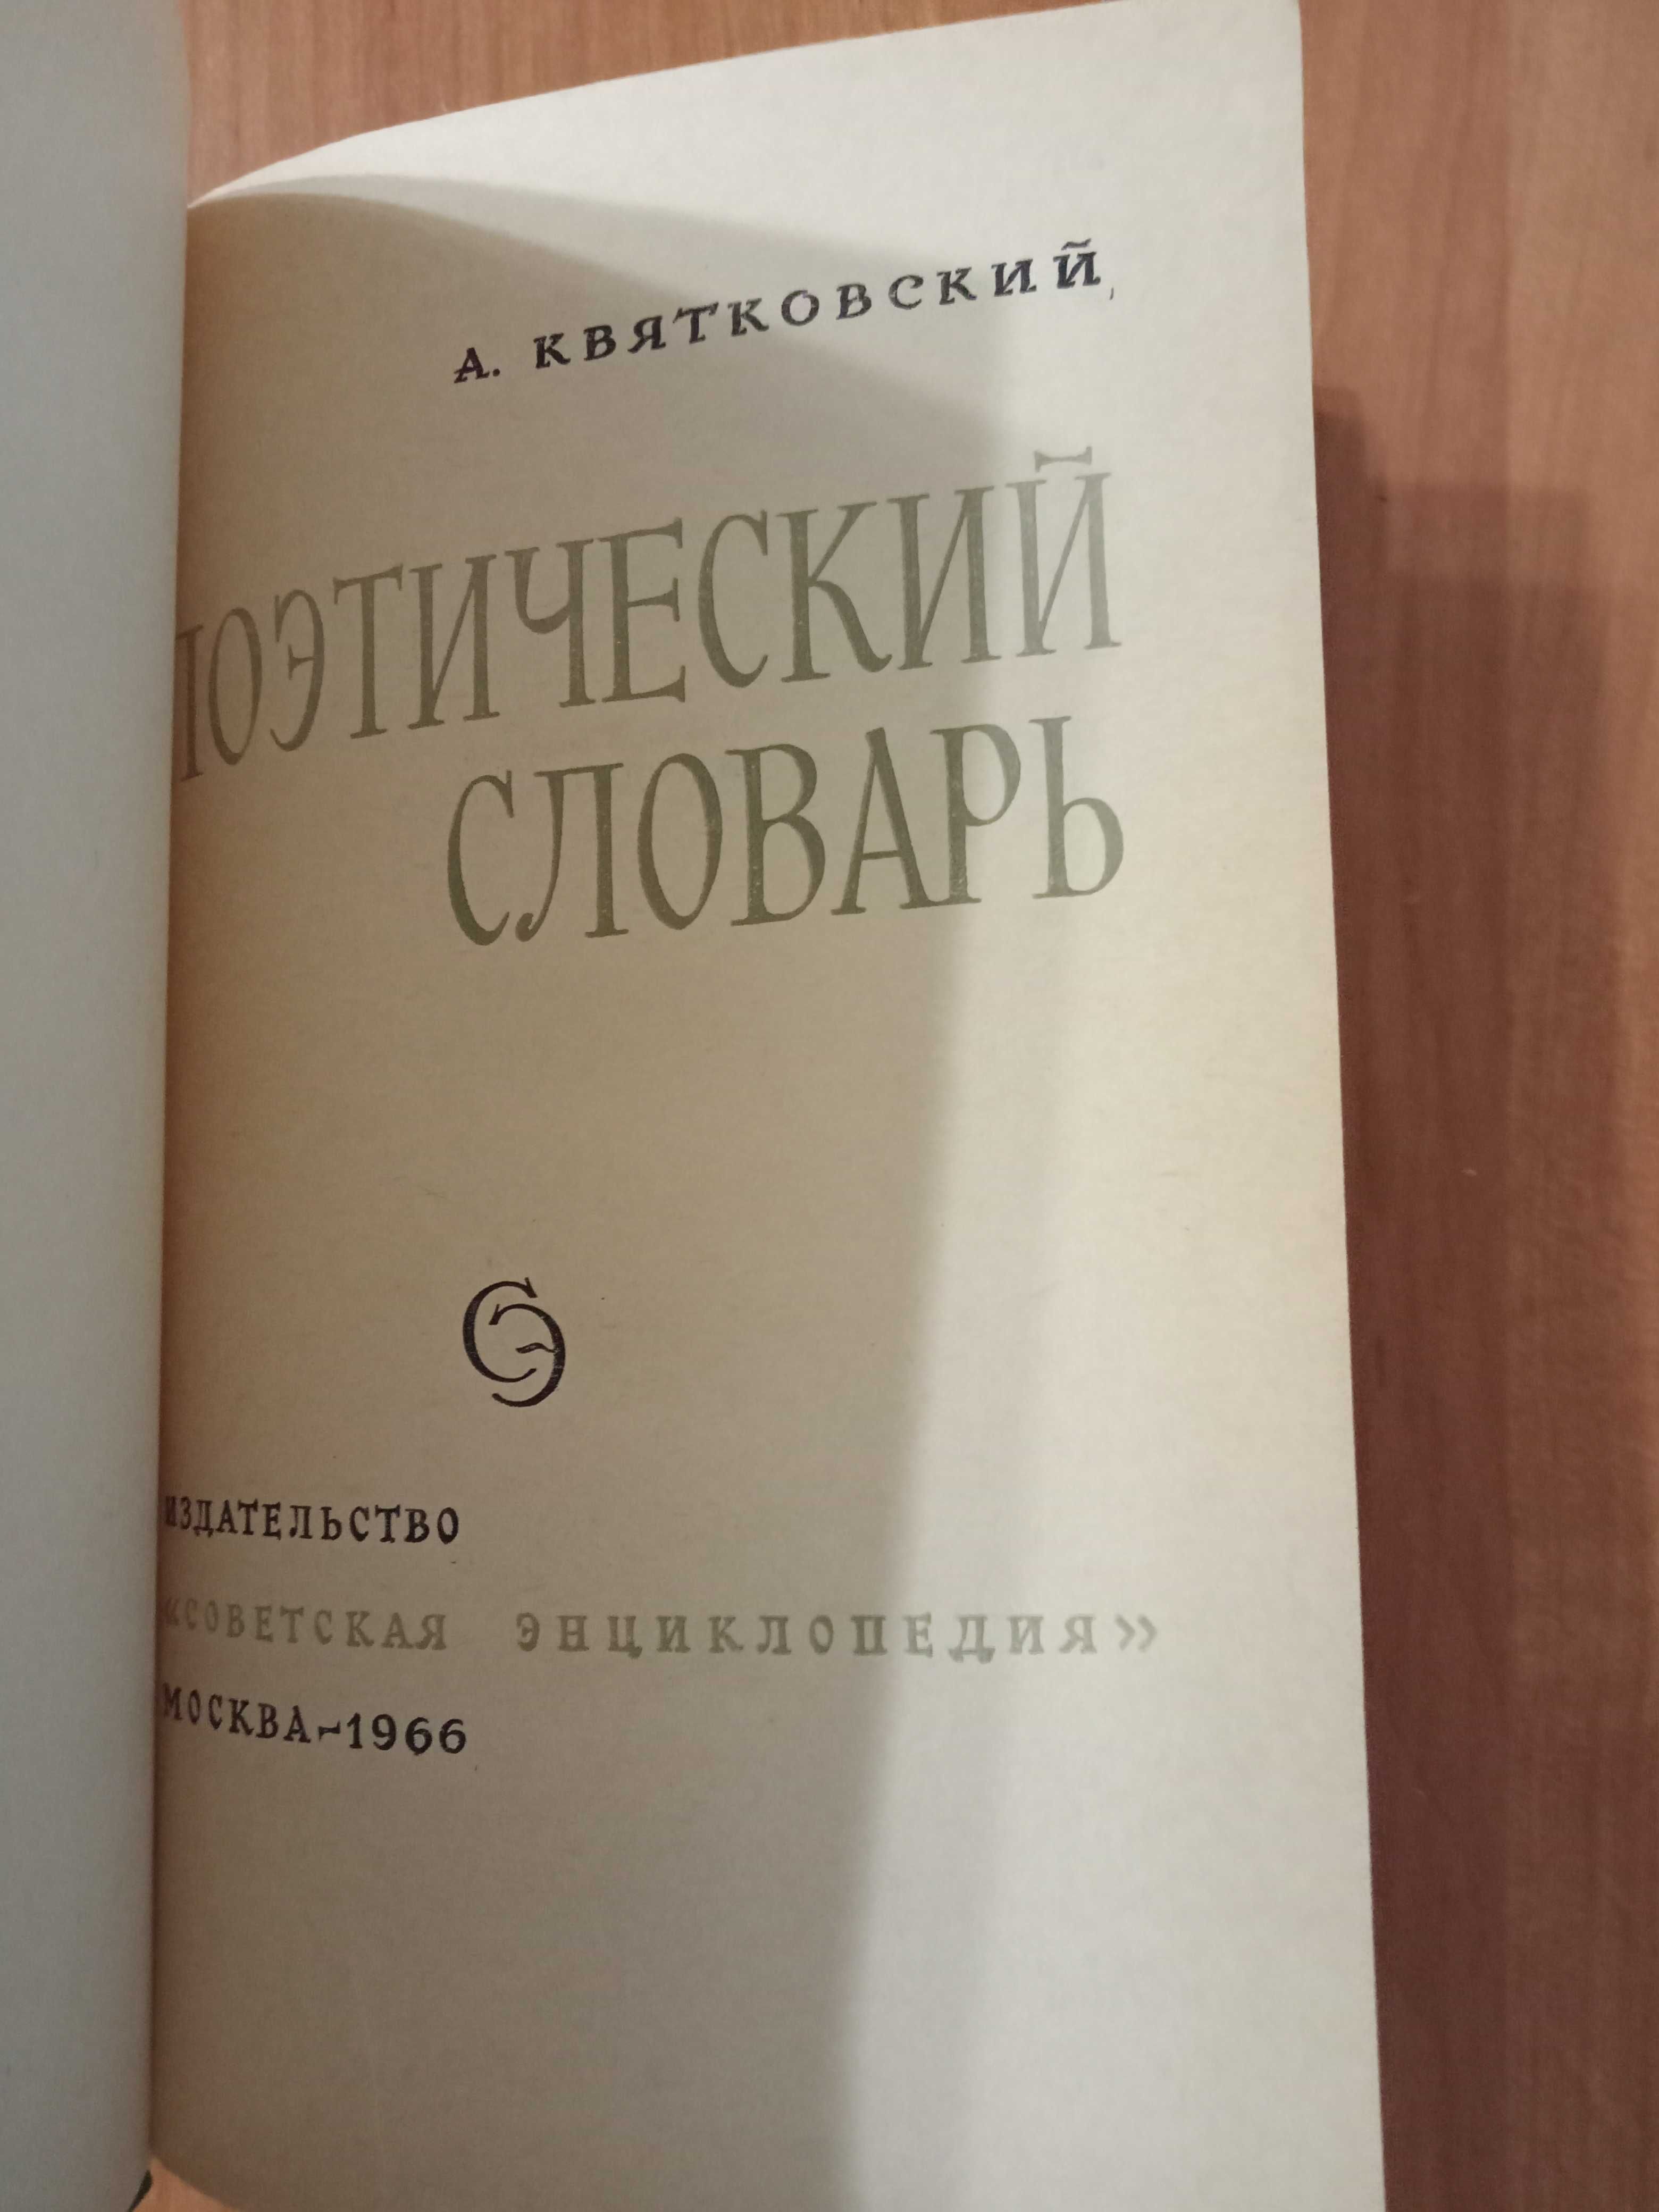 Поэтический словарь Квятковского (антикварна книга, 1966)